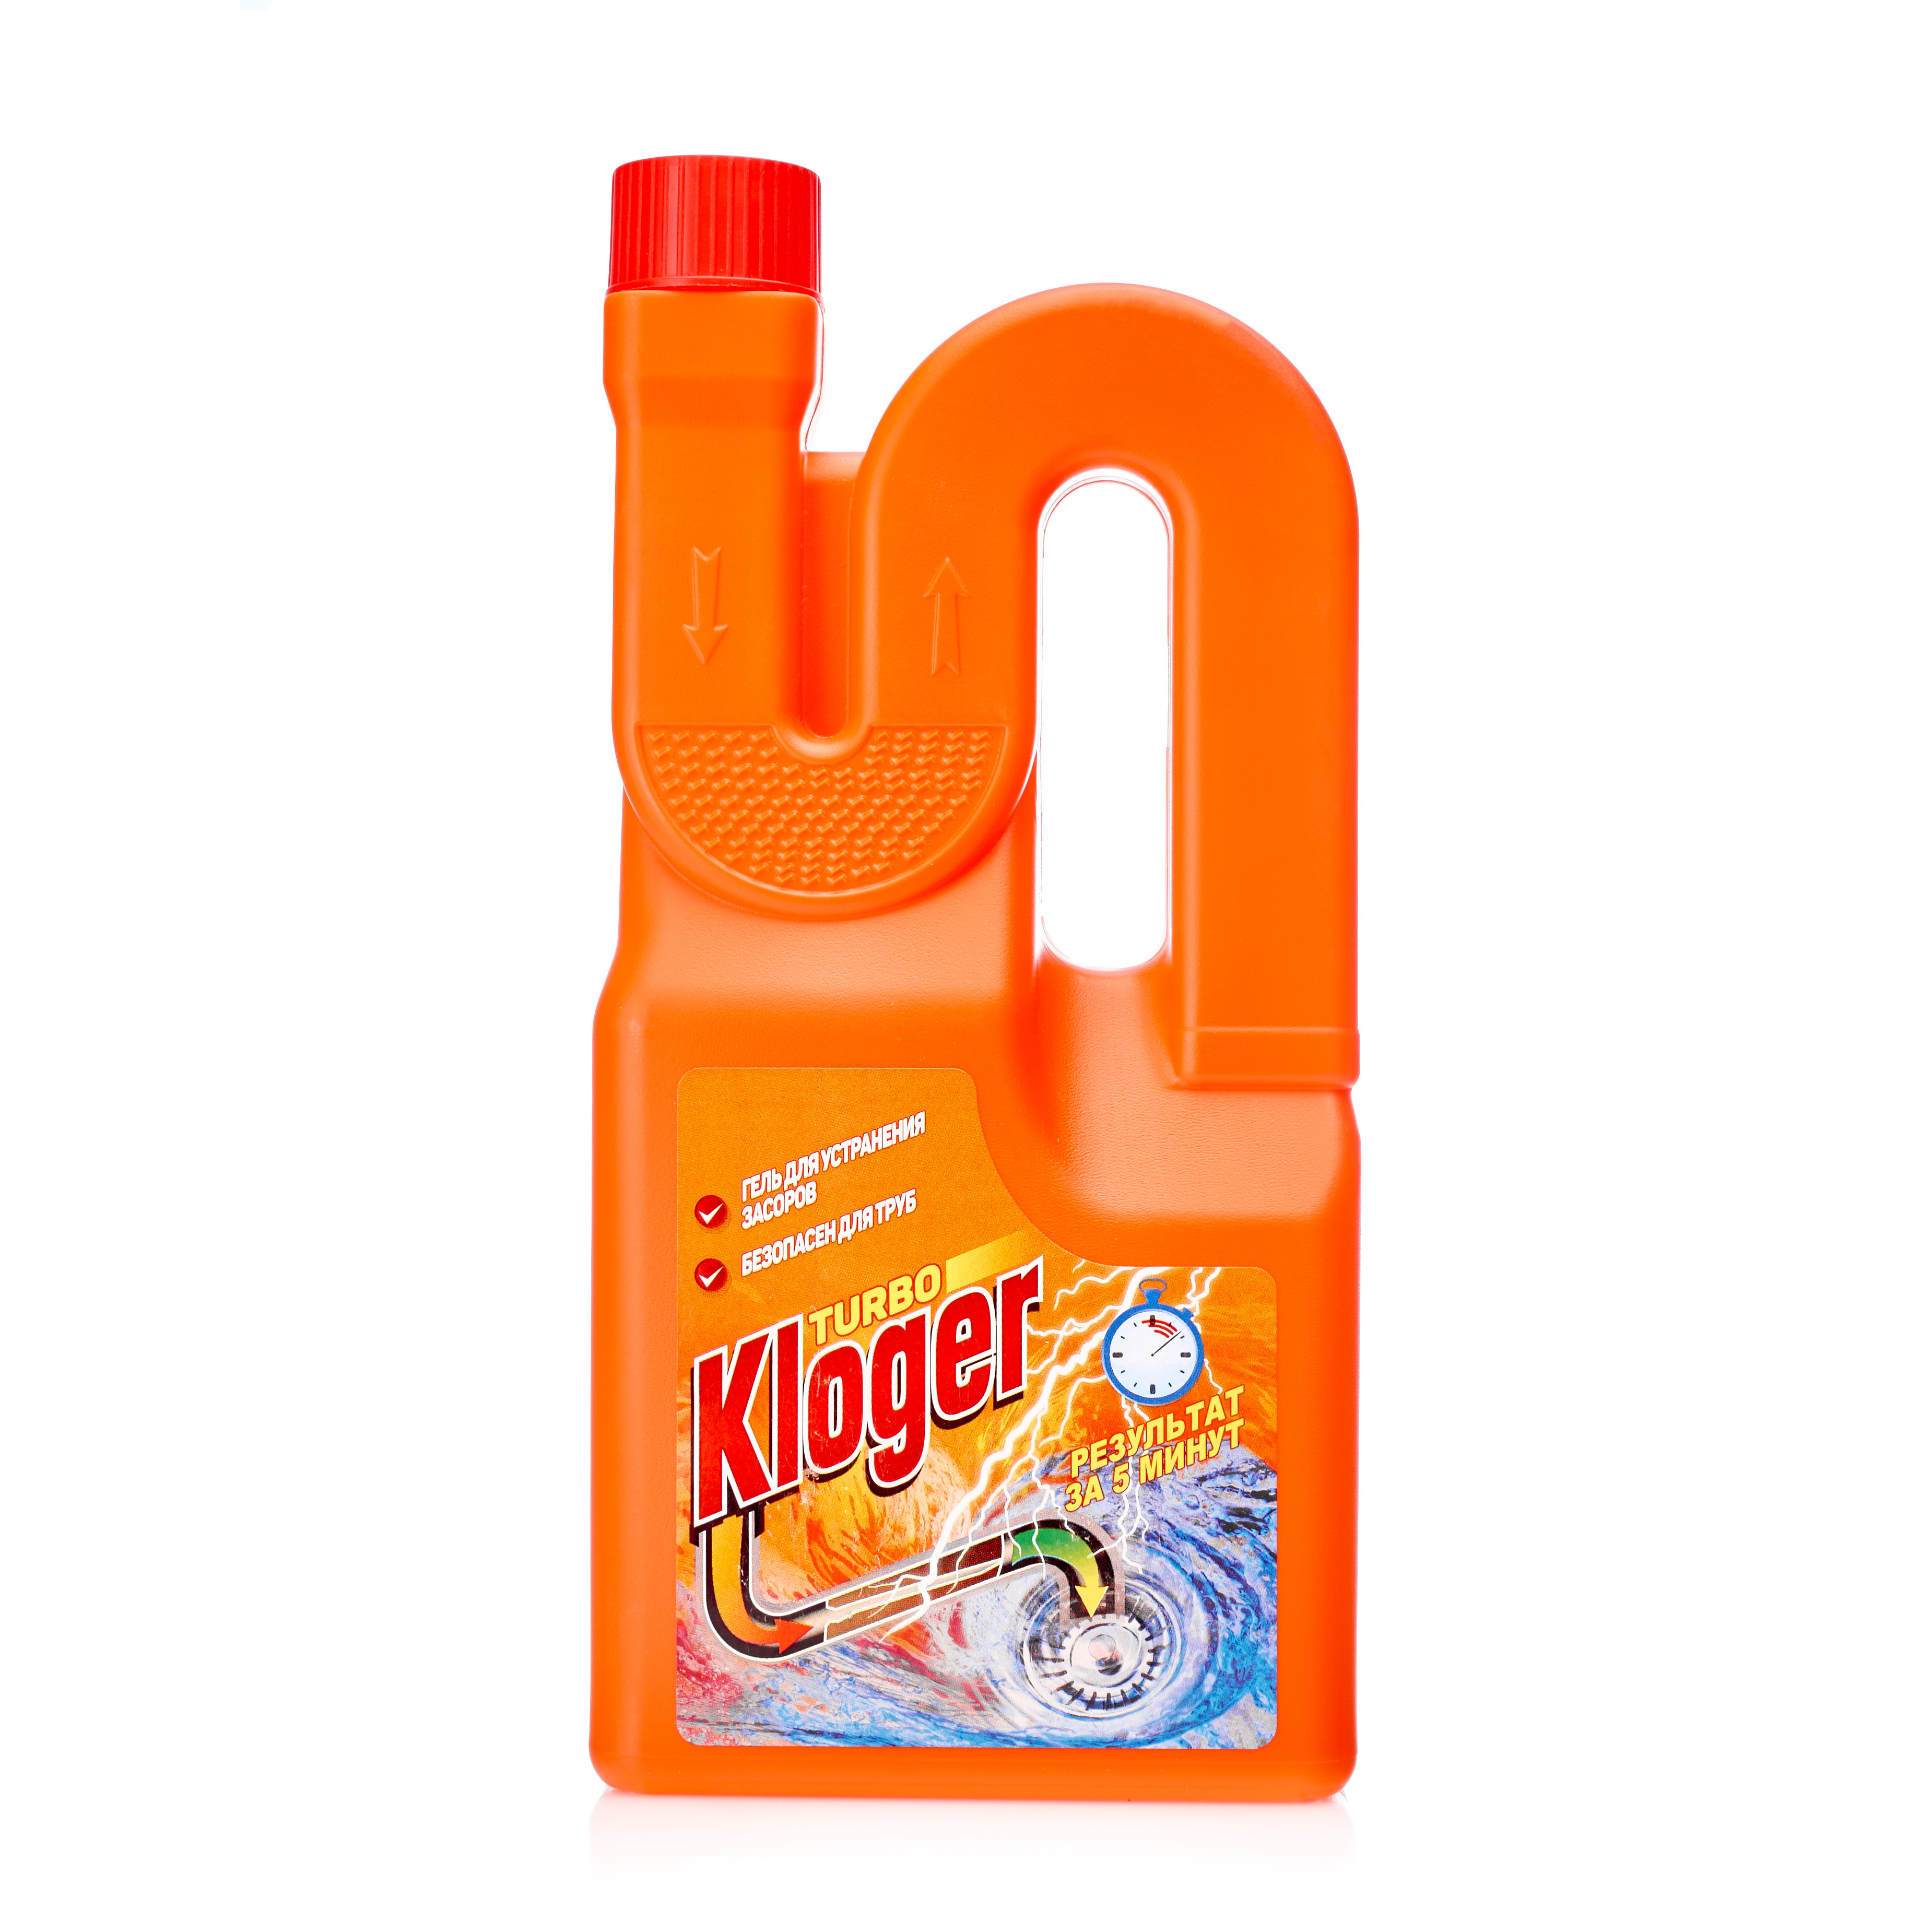 Средство для чистки труб и засоров Kloger Turbo 1л жидкое.